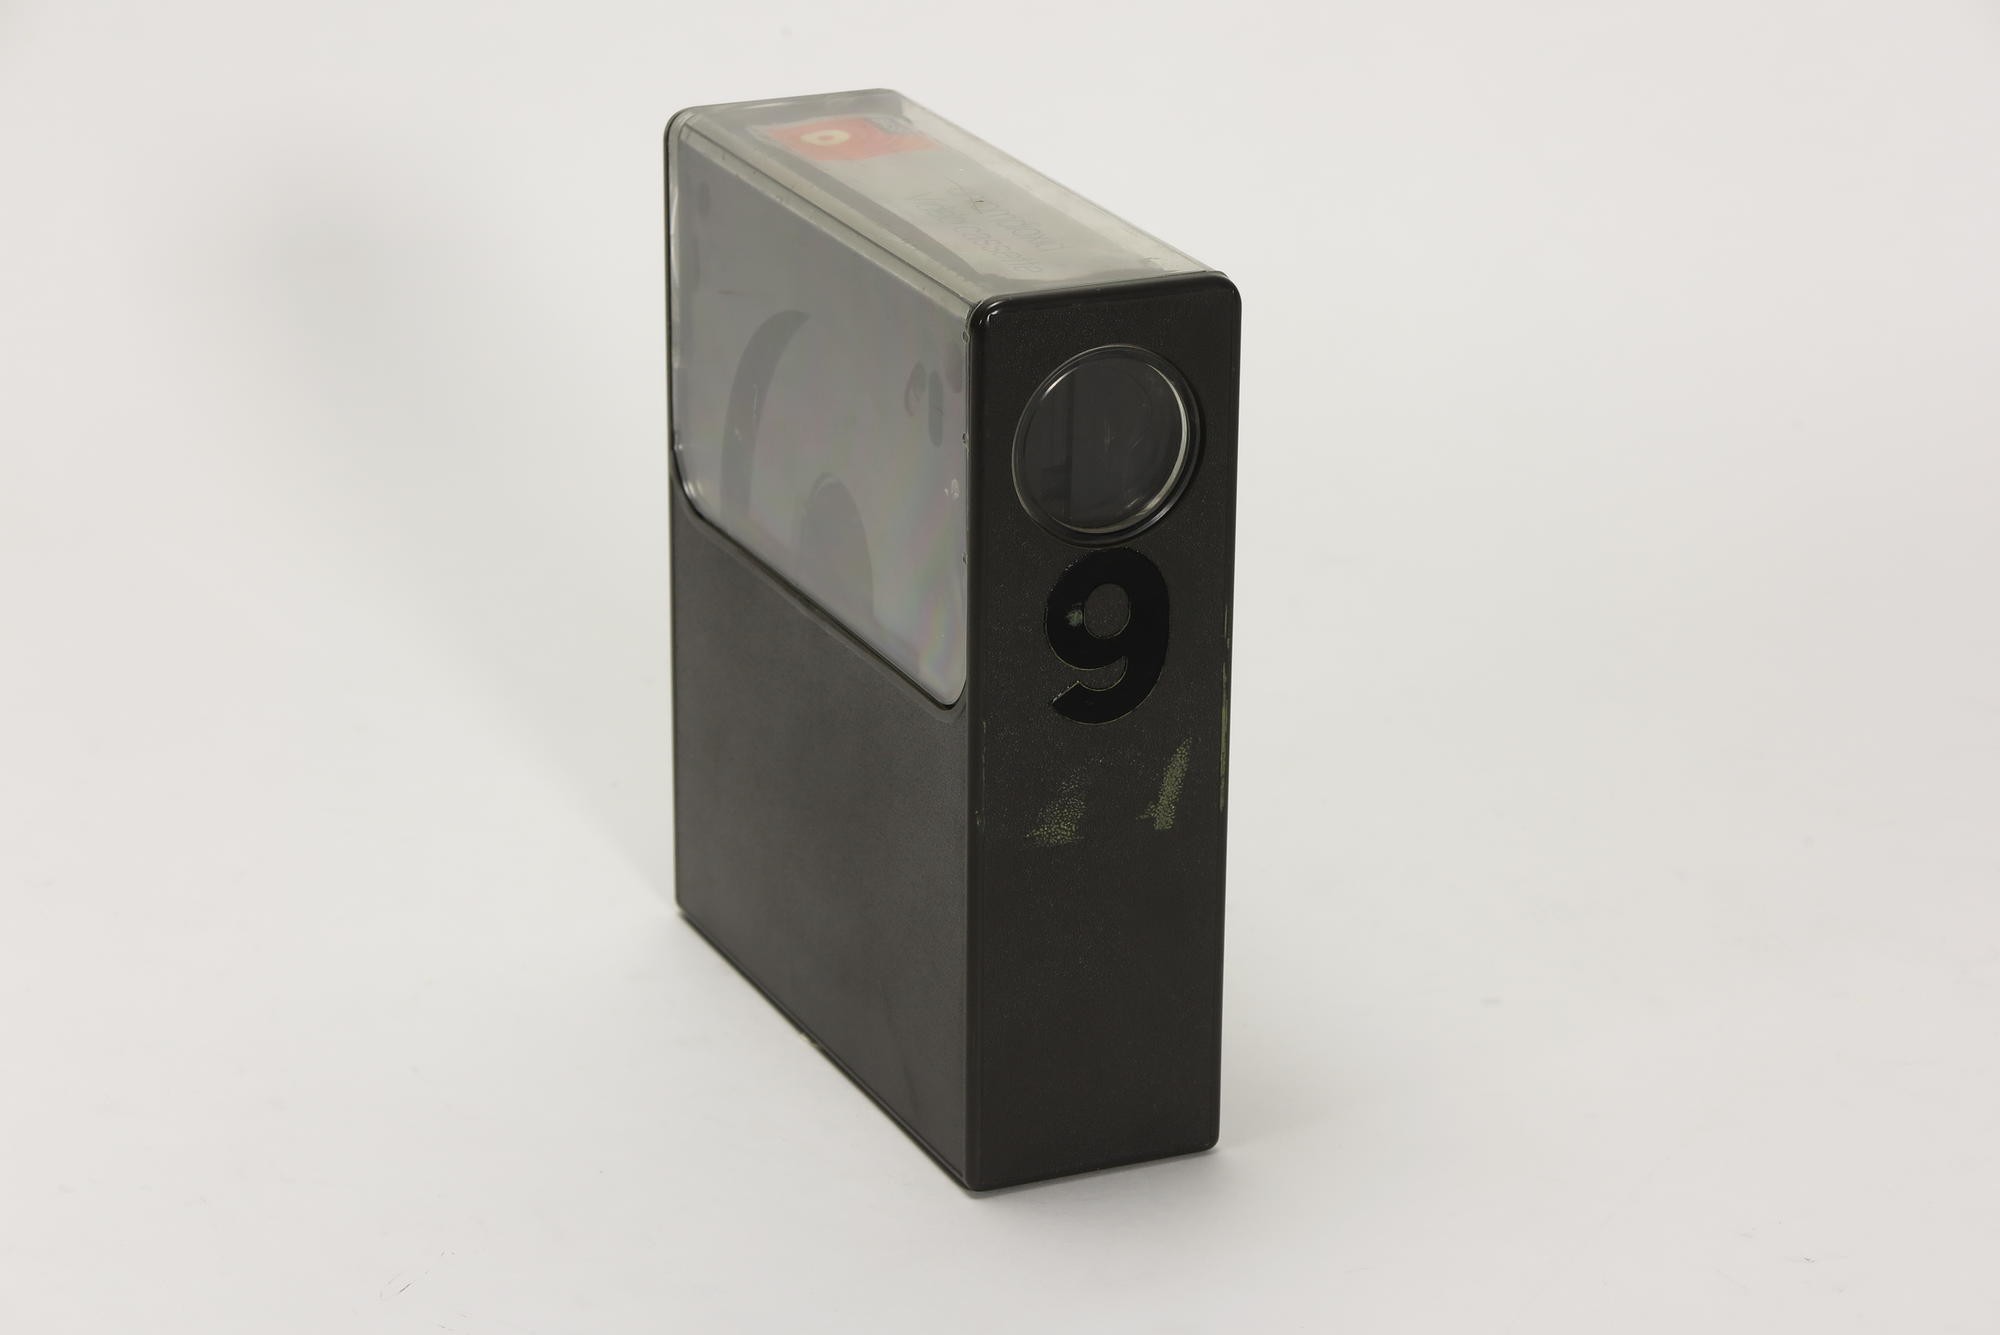 1 x BASF VC 60 Videokassette, Zubehör für Videorecorder Telefunken VR 40 (Stiftung Deutsches Technikmuseum Berlin CC0)